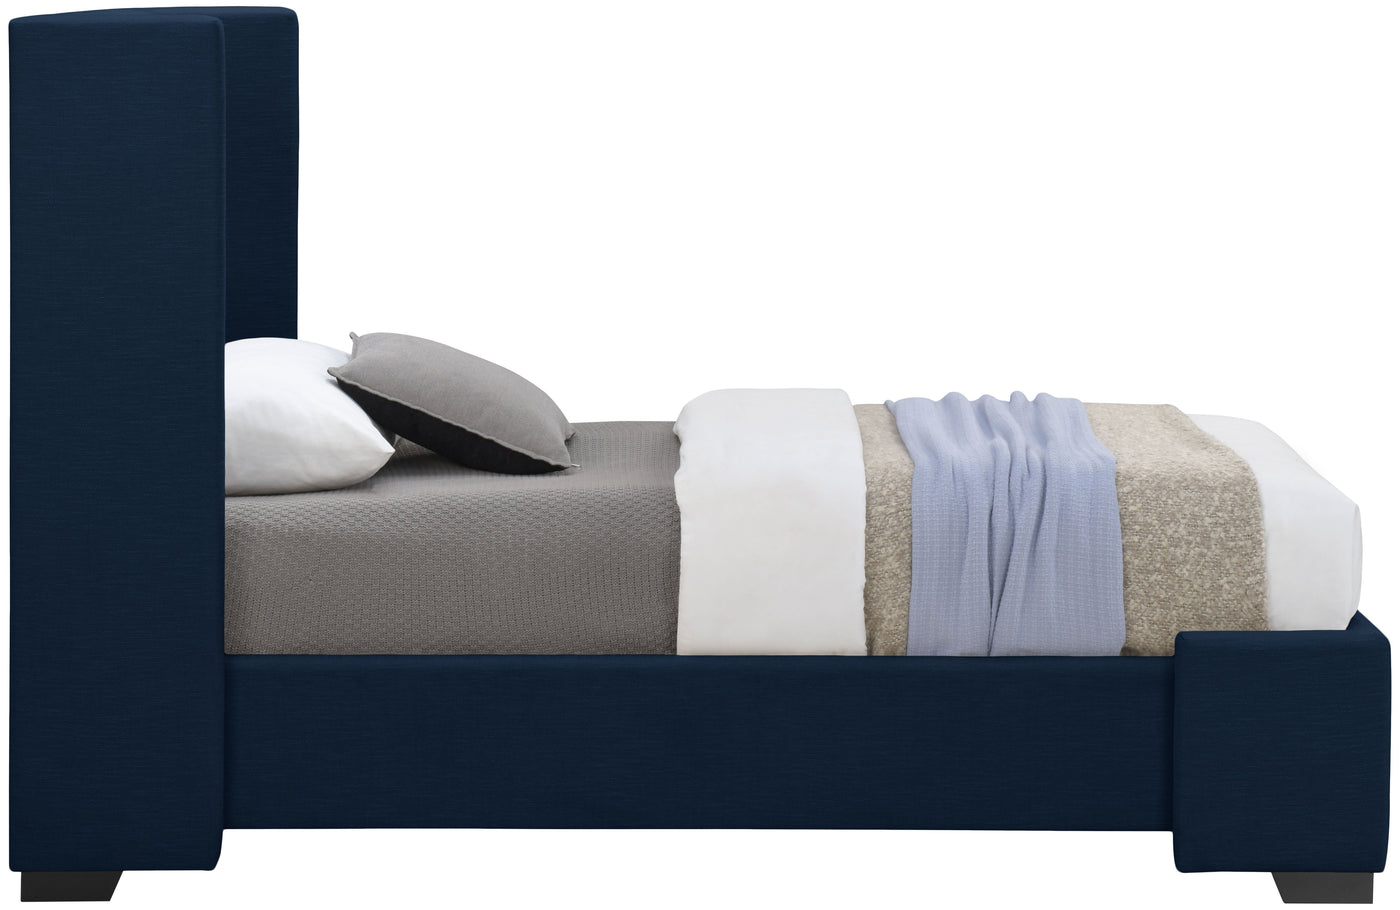 Oxford Bed-Beds-Jennifer Furniture